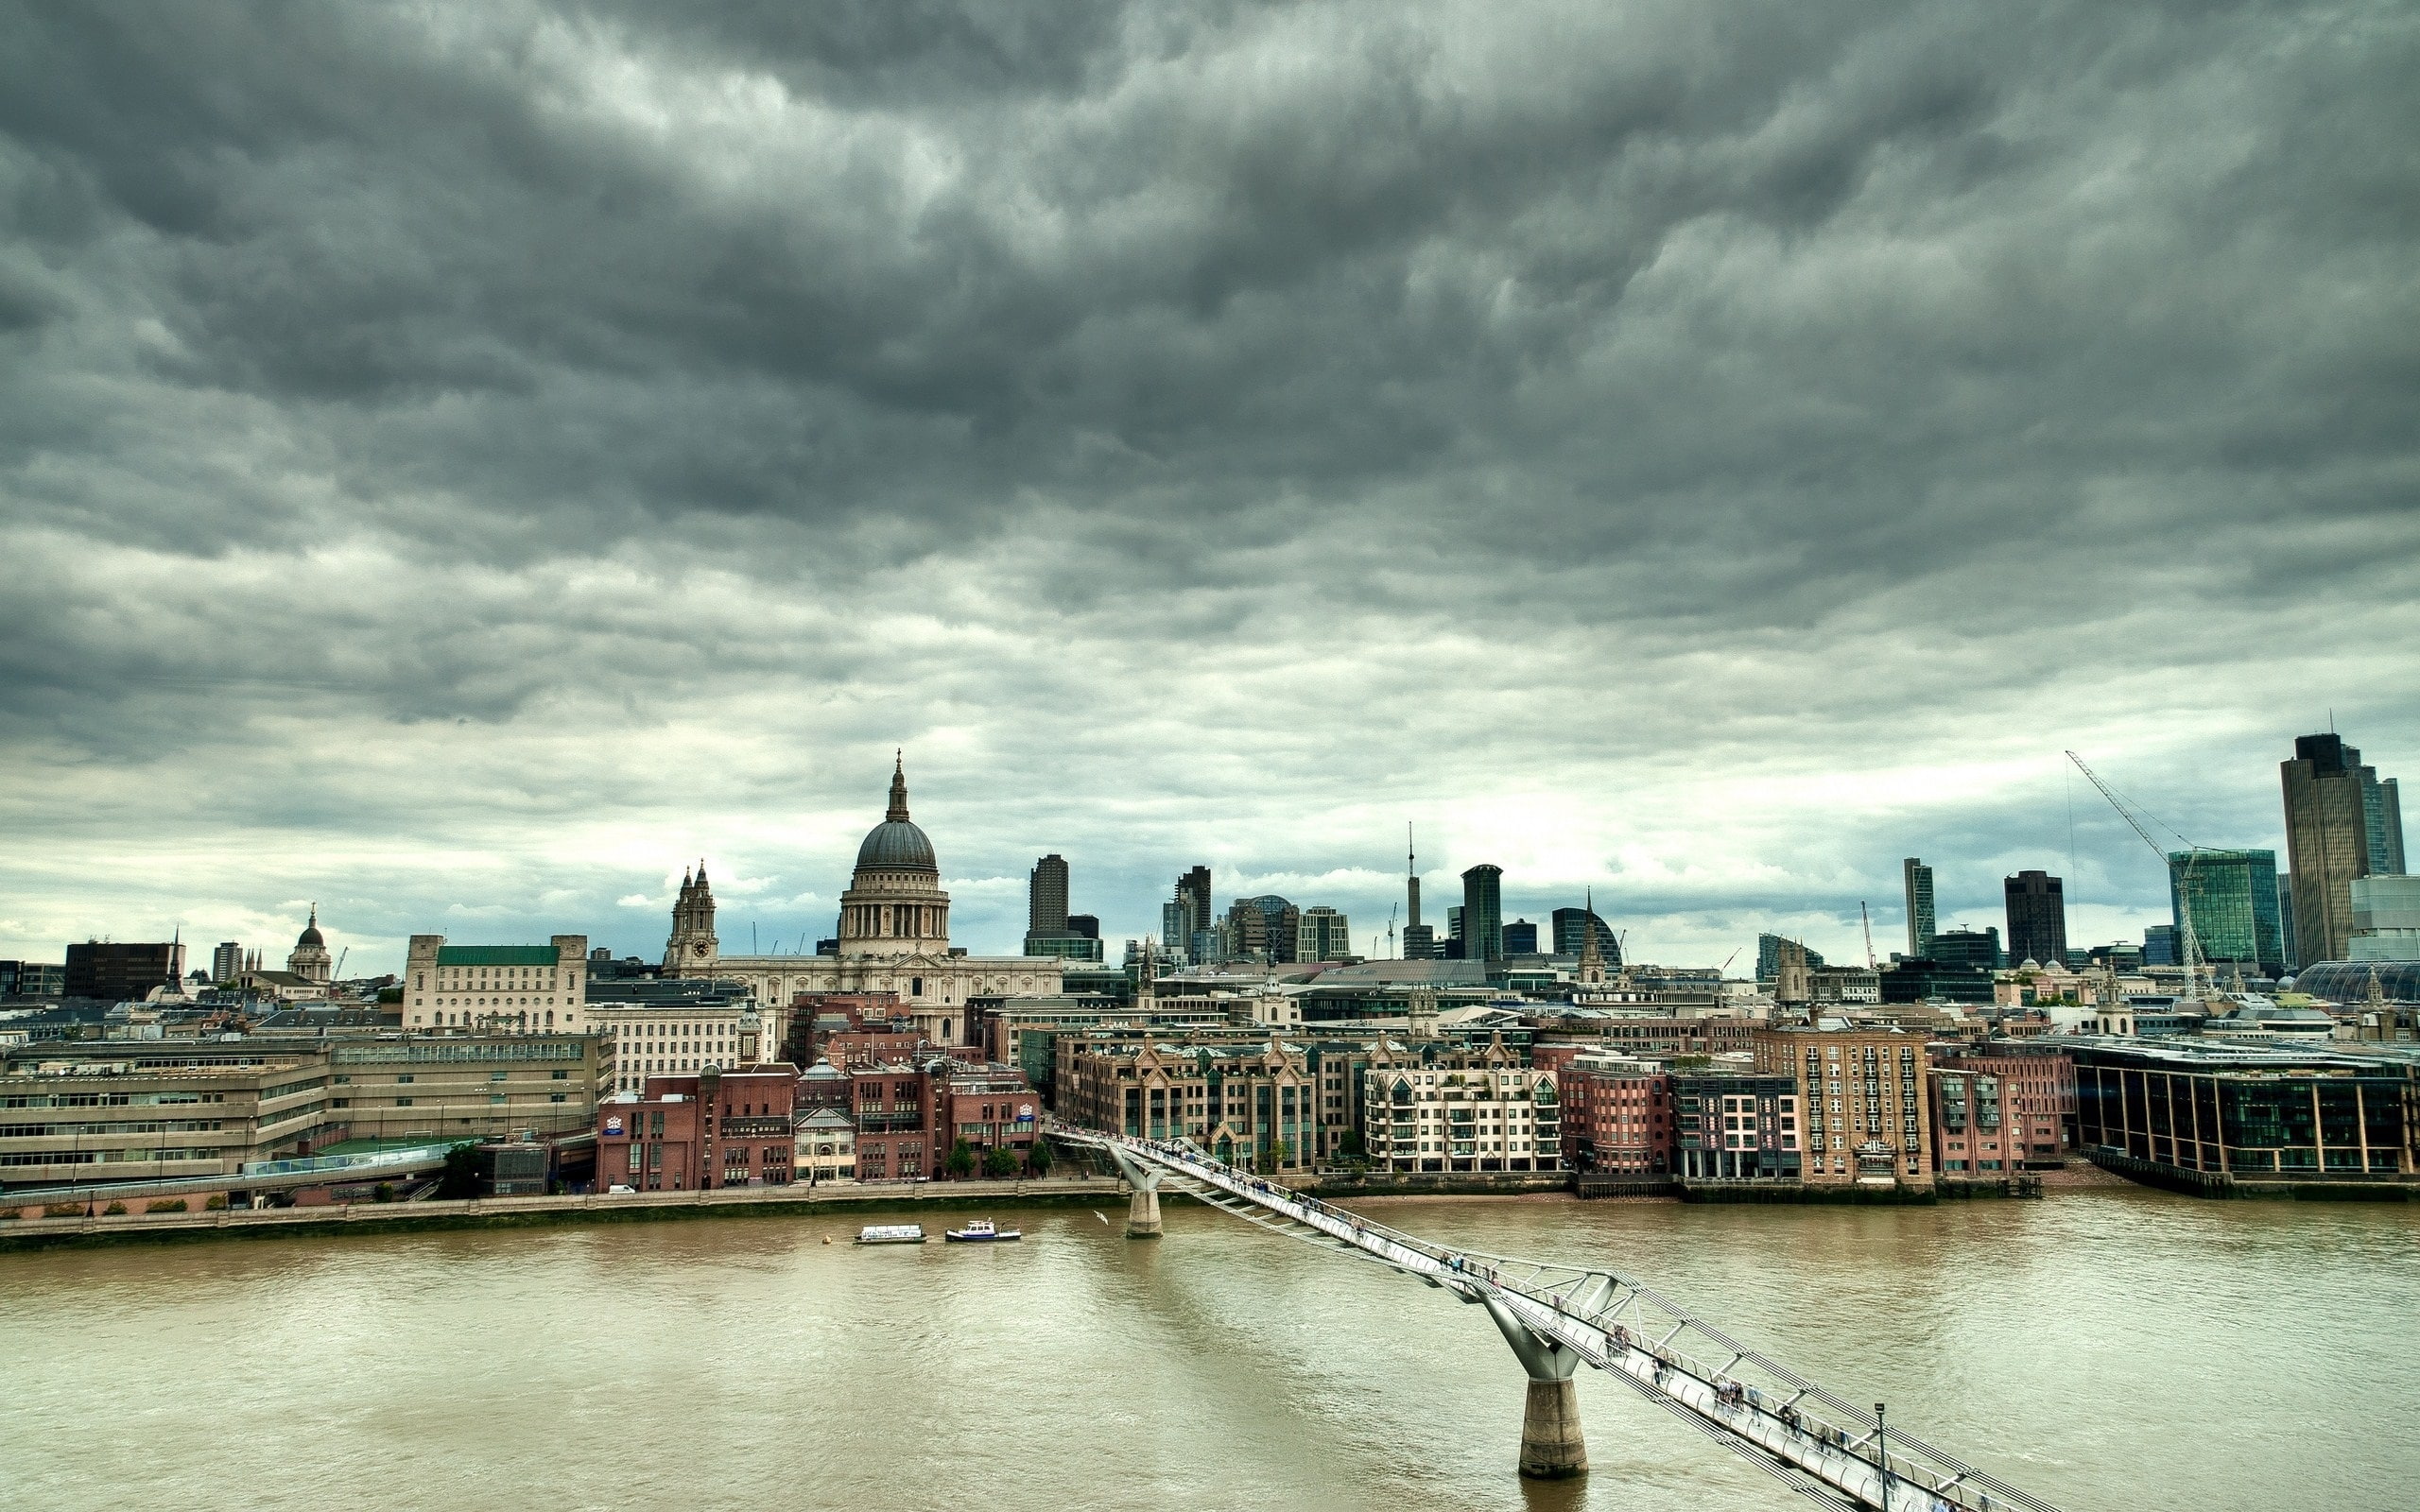 London, England, Millennium Bridge, river, houses, clouds, dusk